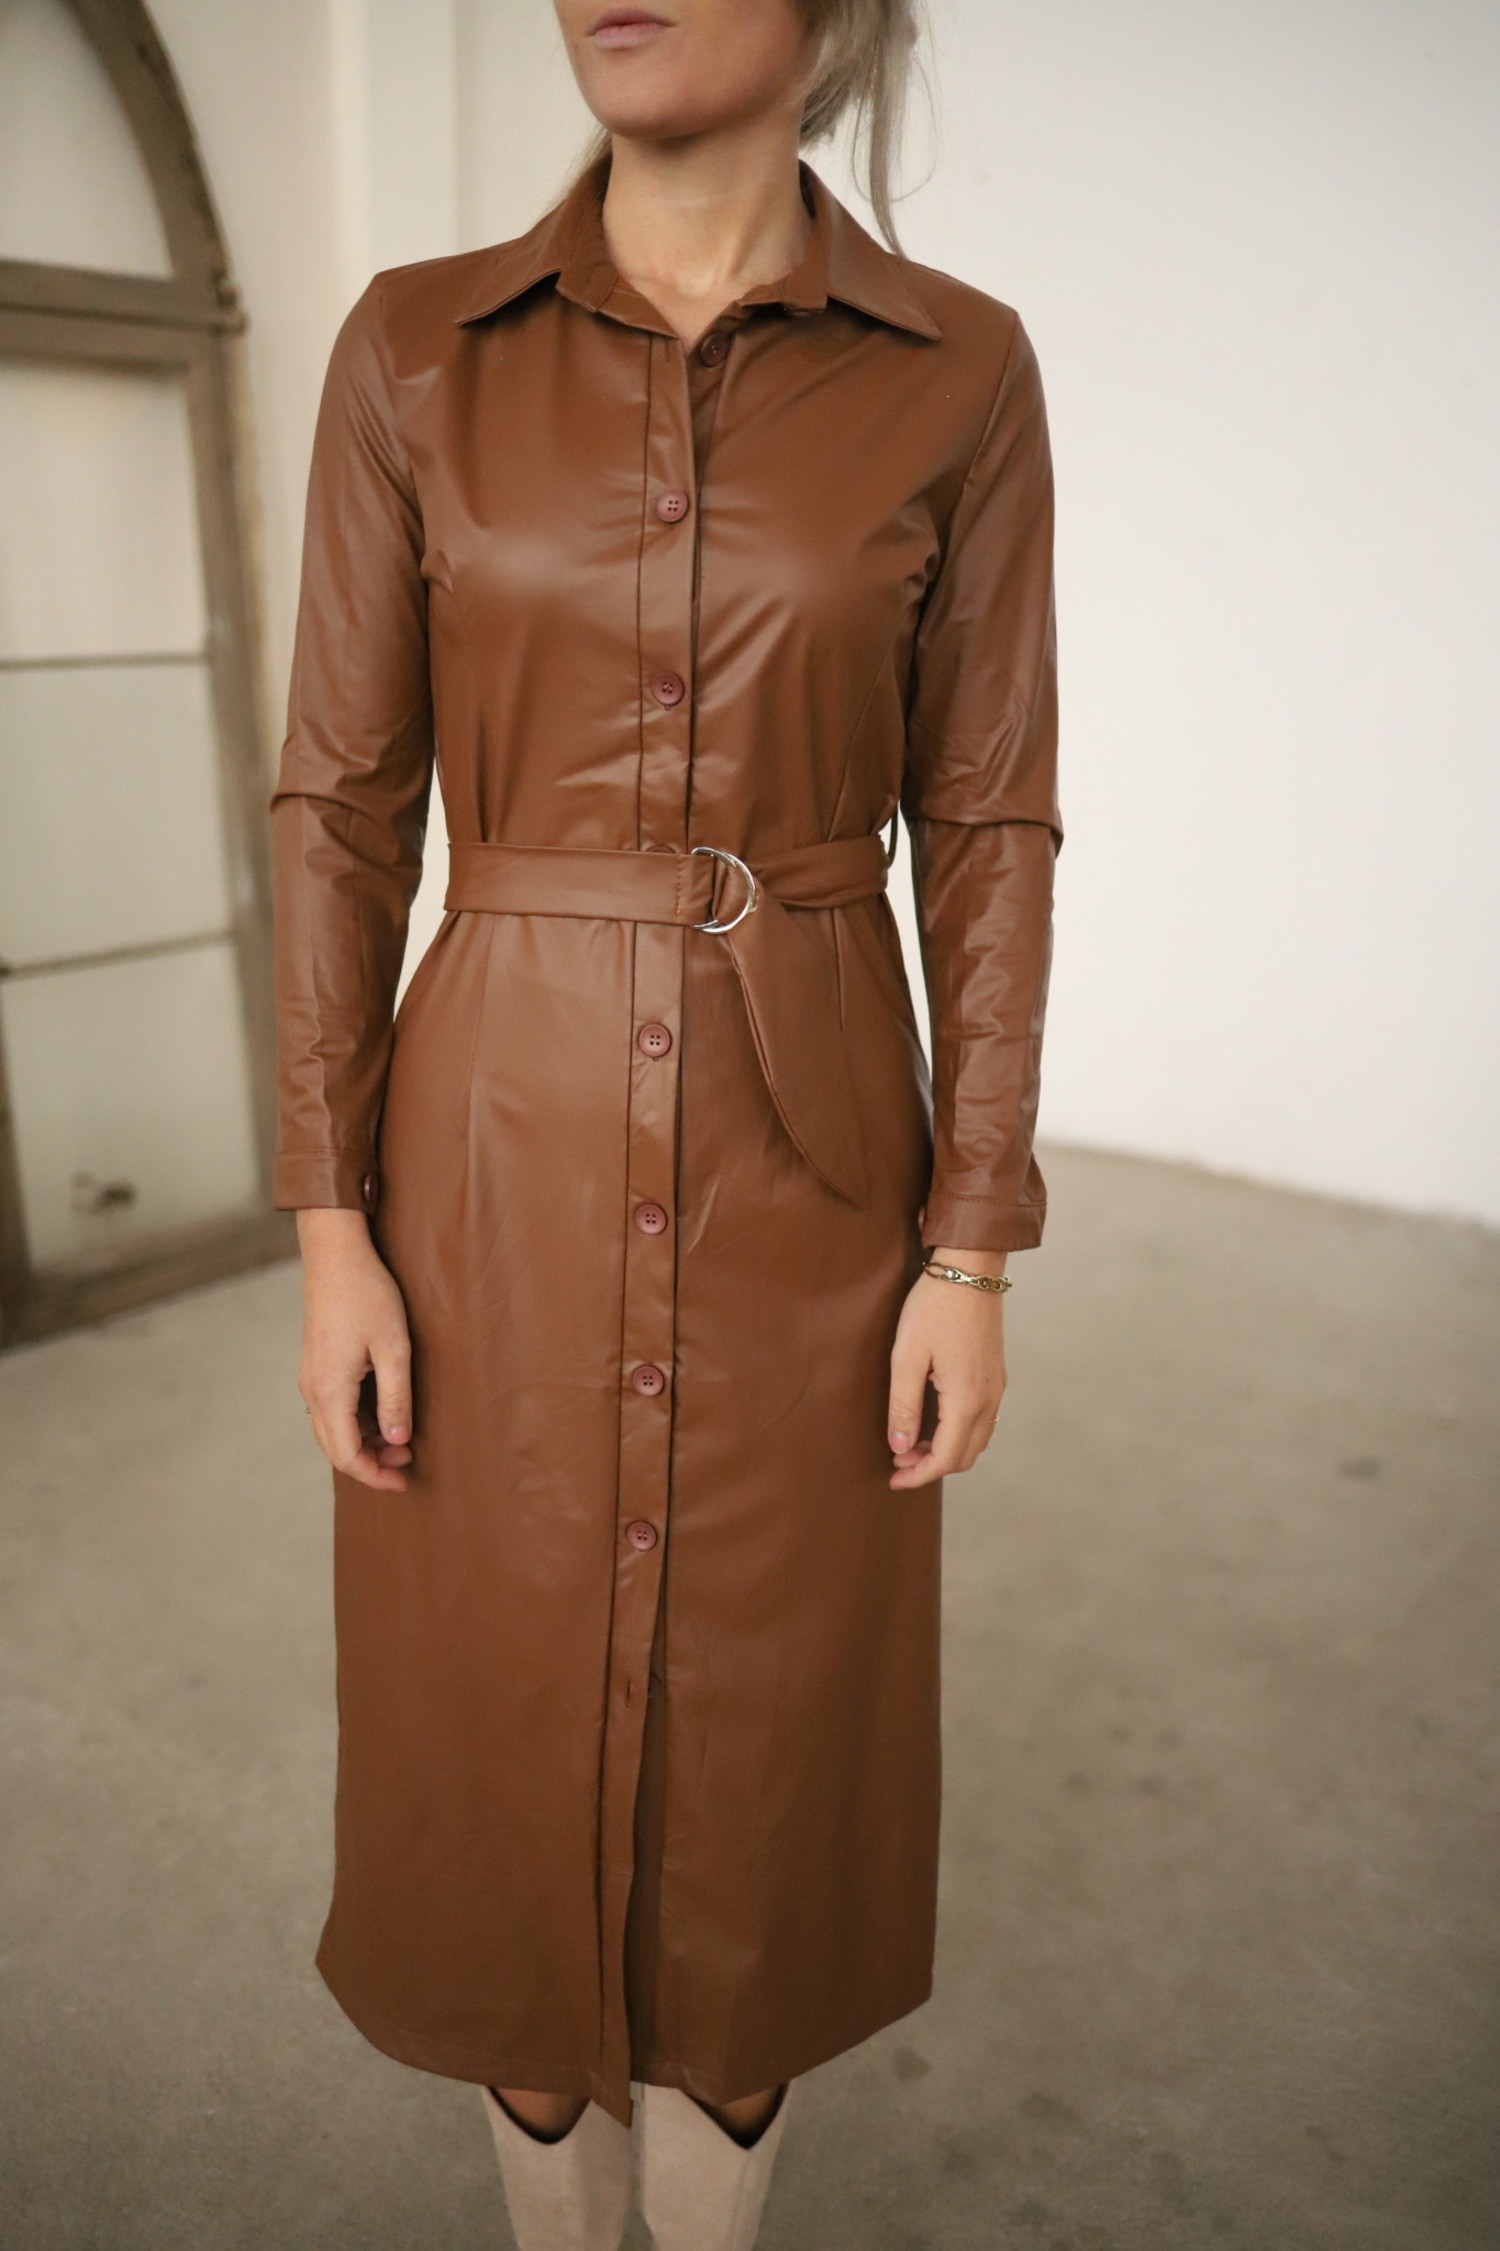 Leather dress - Bij Keesje